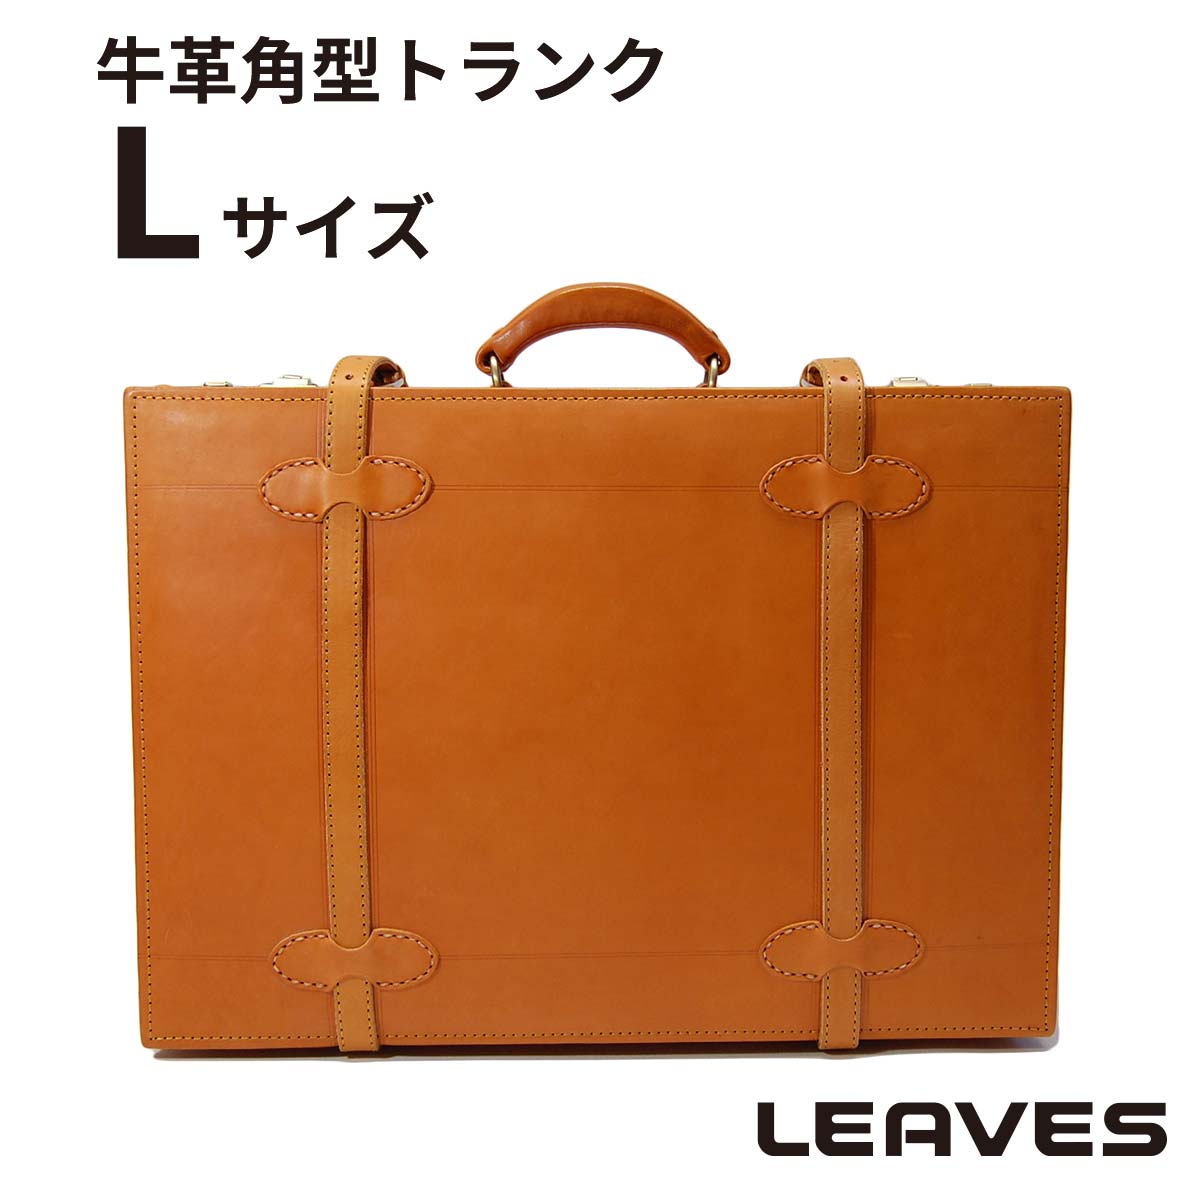 【楽天市場】LEAVES(リーブス) ハンドメイド 牛革トランク 28 